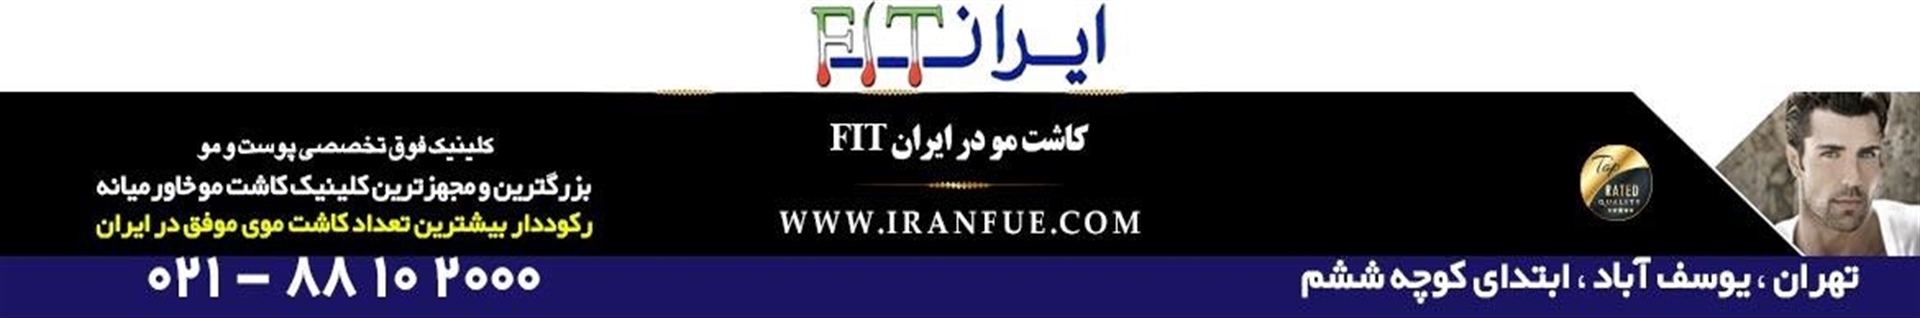 کلینیک کاشت مو ایران FIT